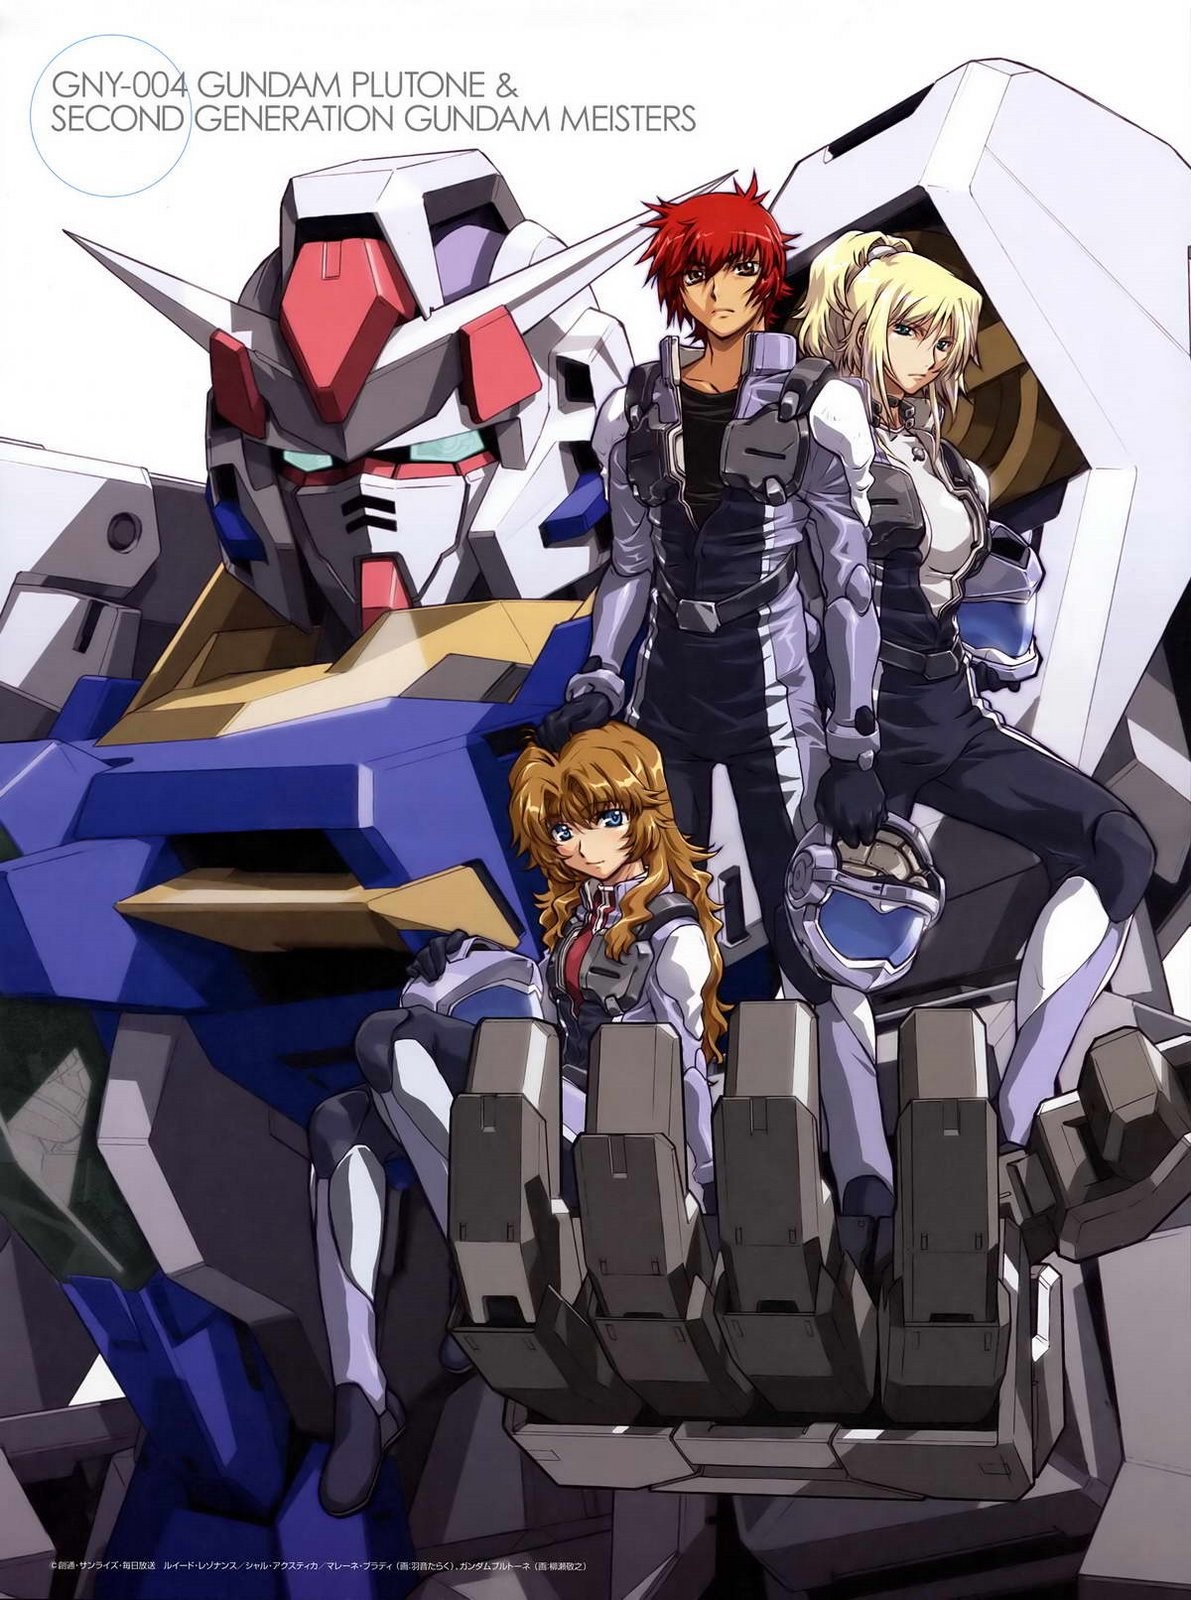 Anime 1191x1600 anime Mobile Suit Gundam 00 Gundam anime girls anime boys